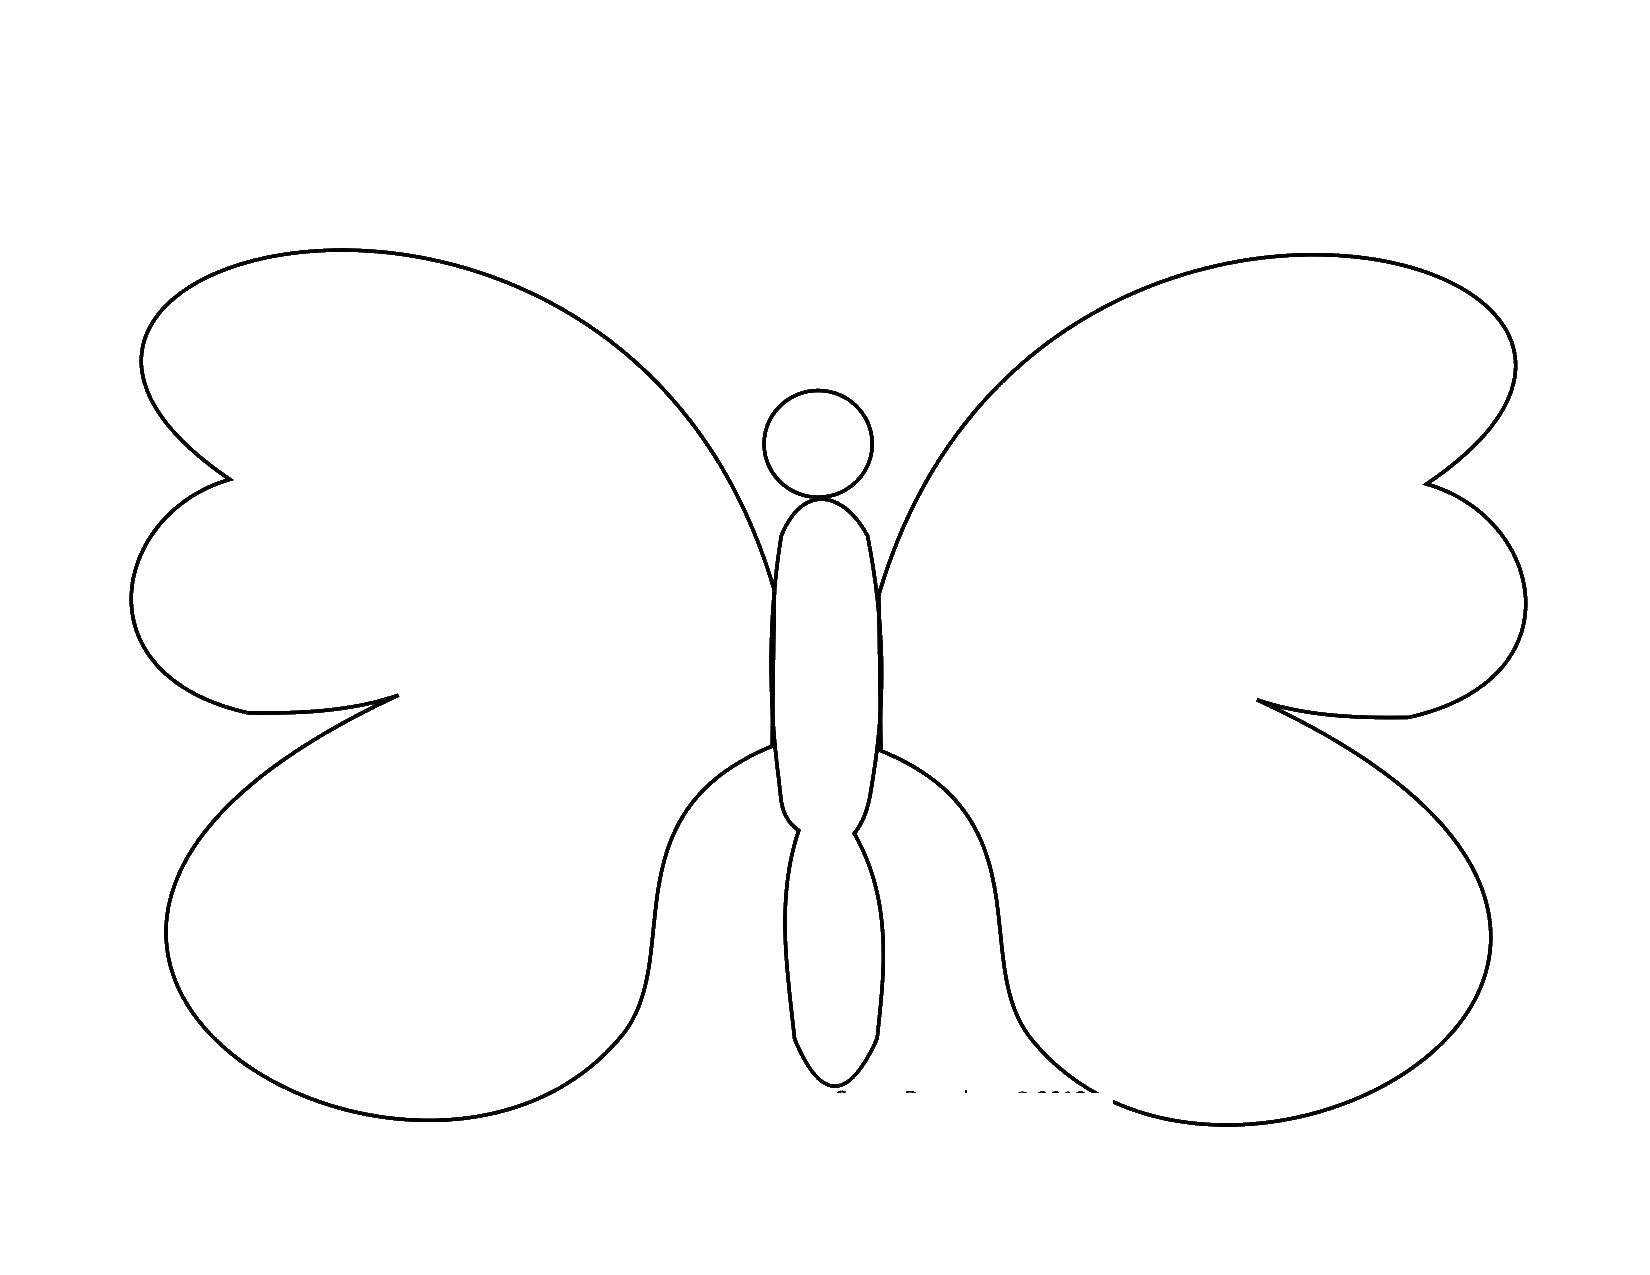   Бабочка с неузорчатыми крылышками